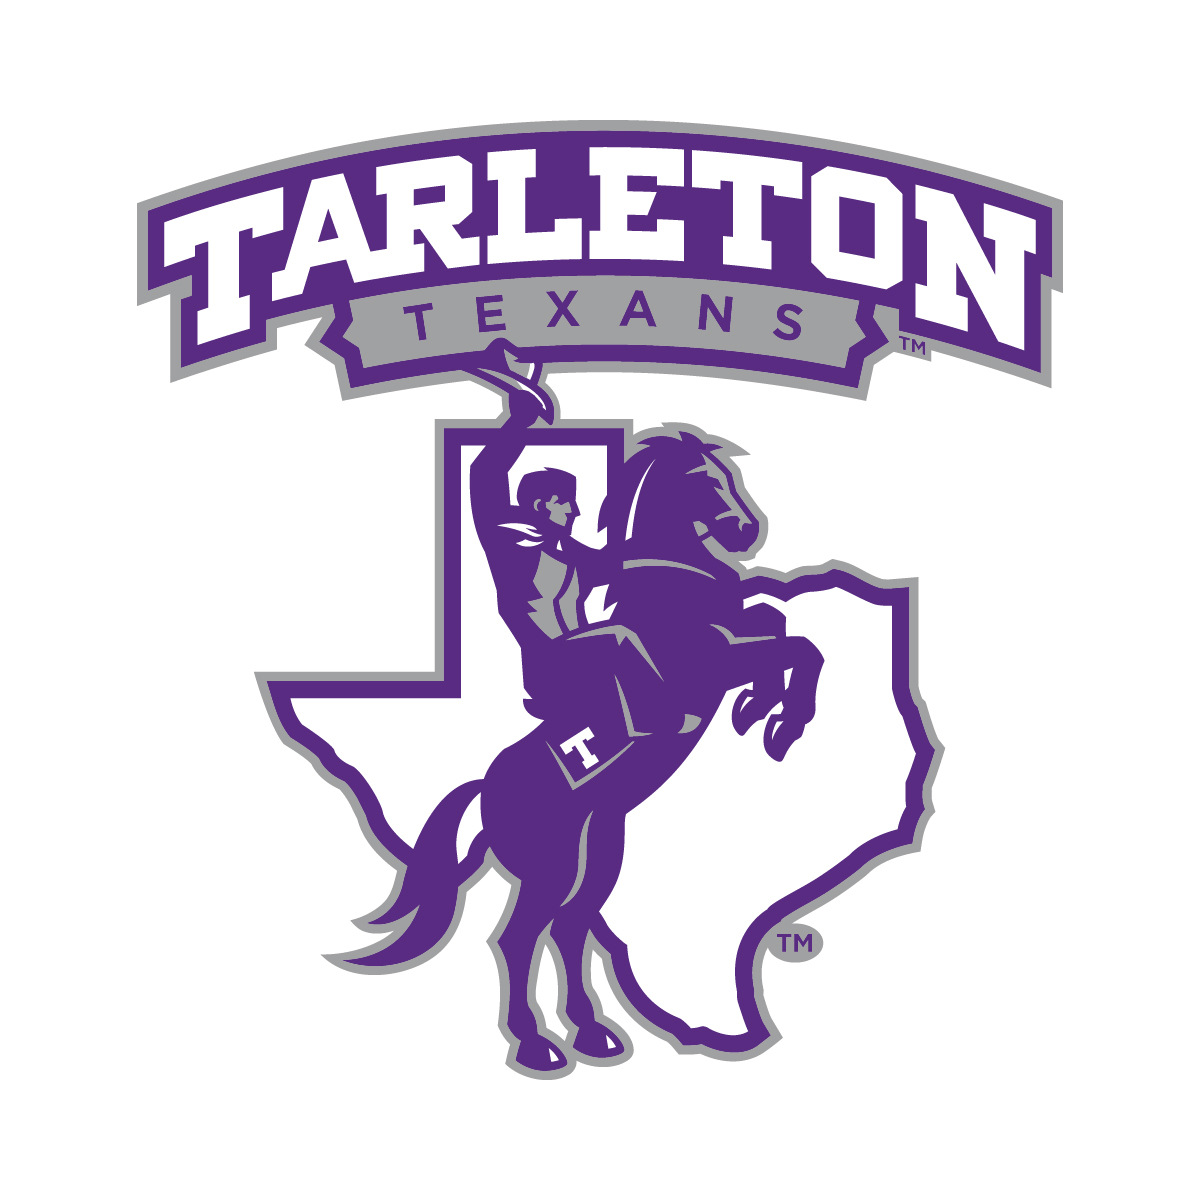 Tarleton State University